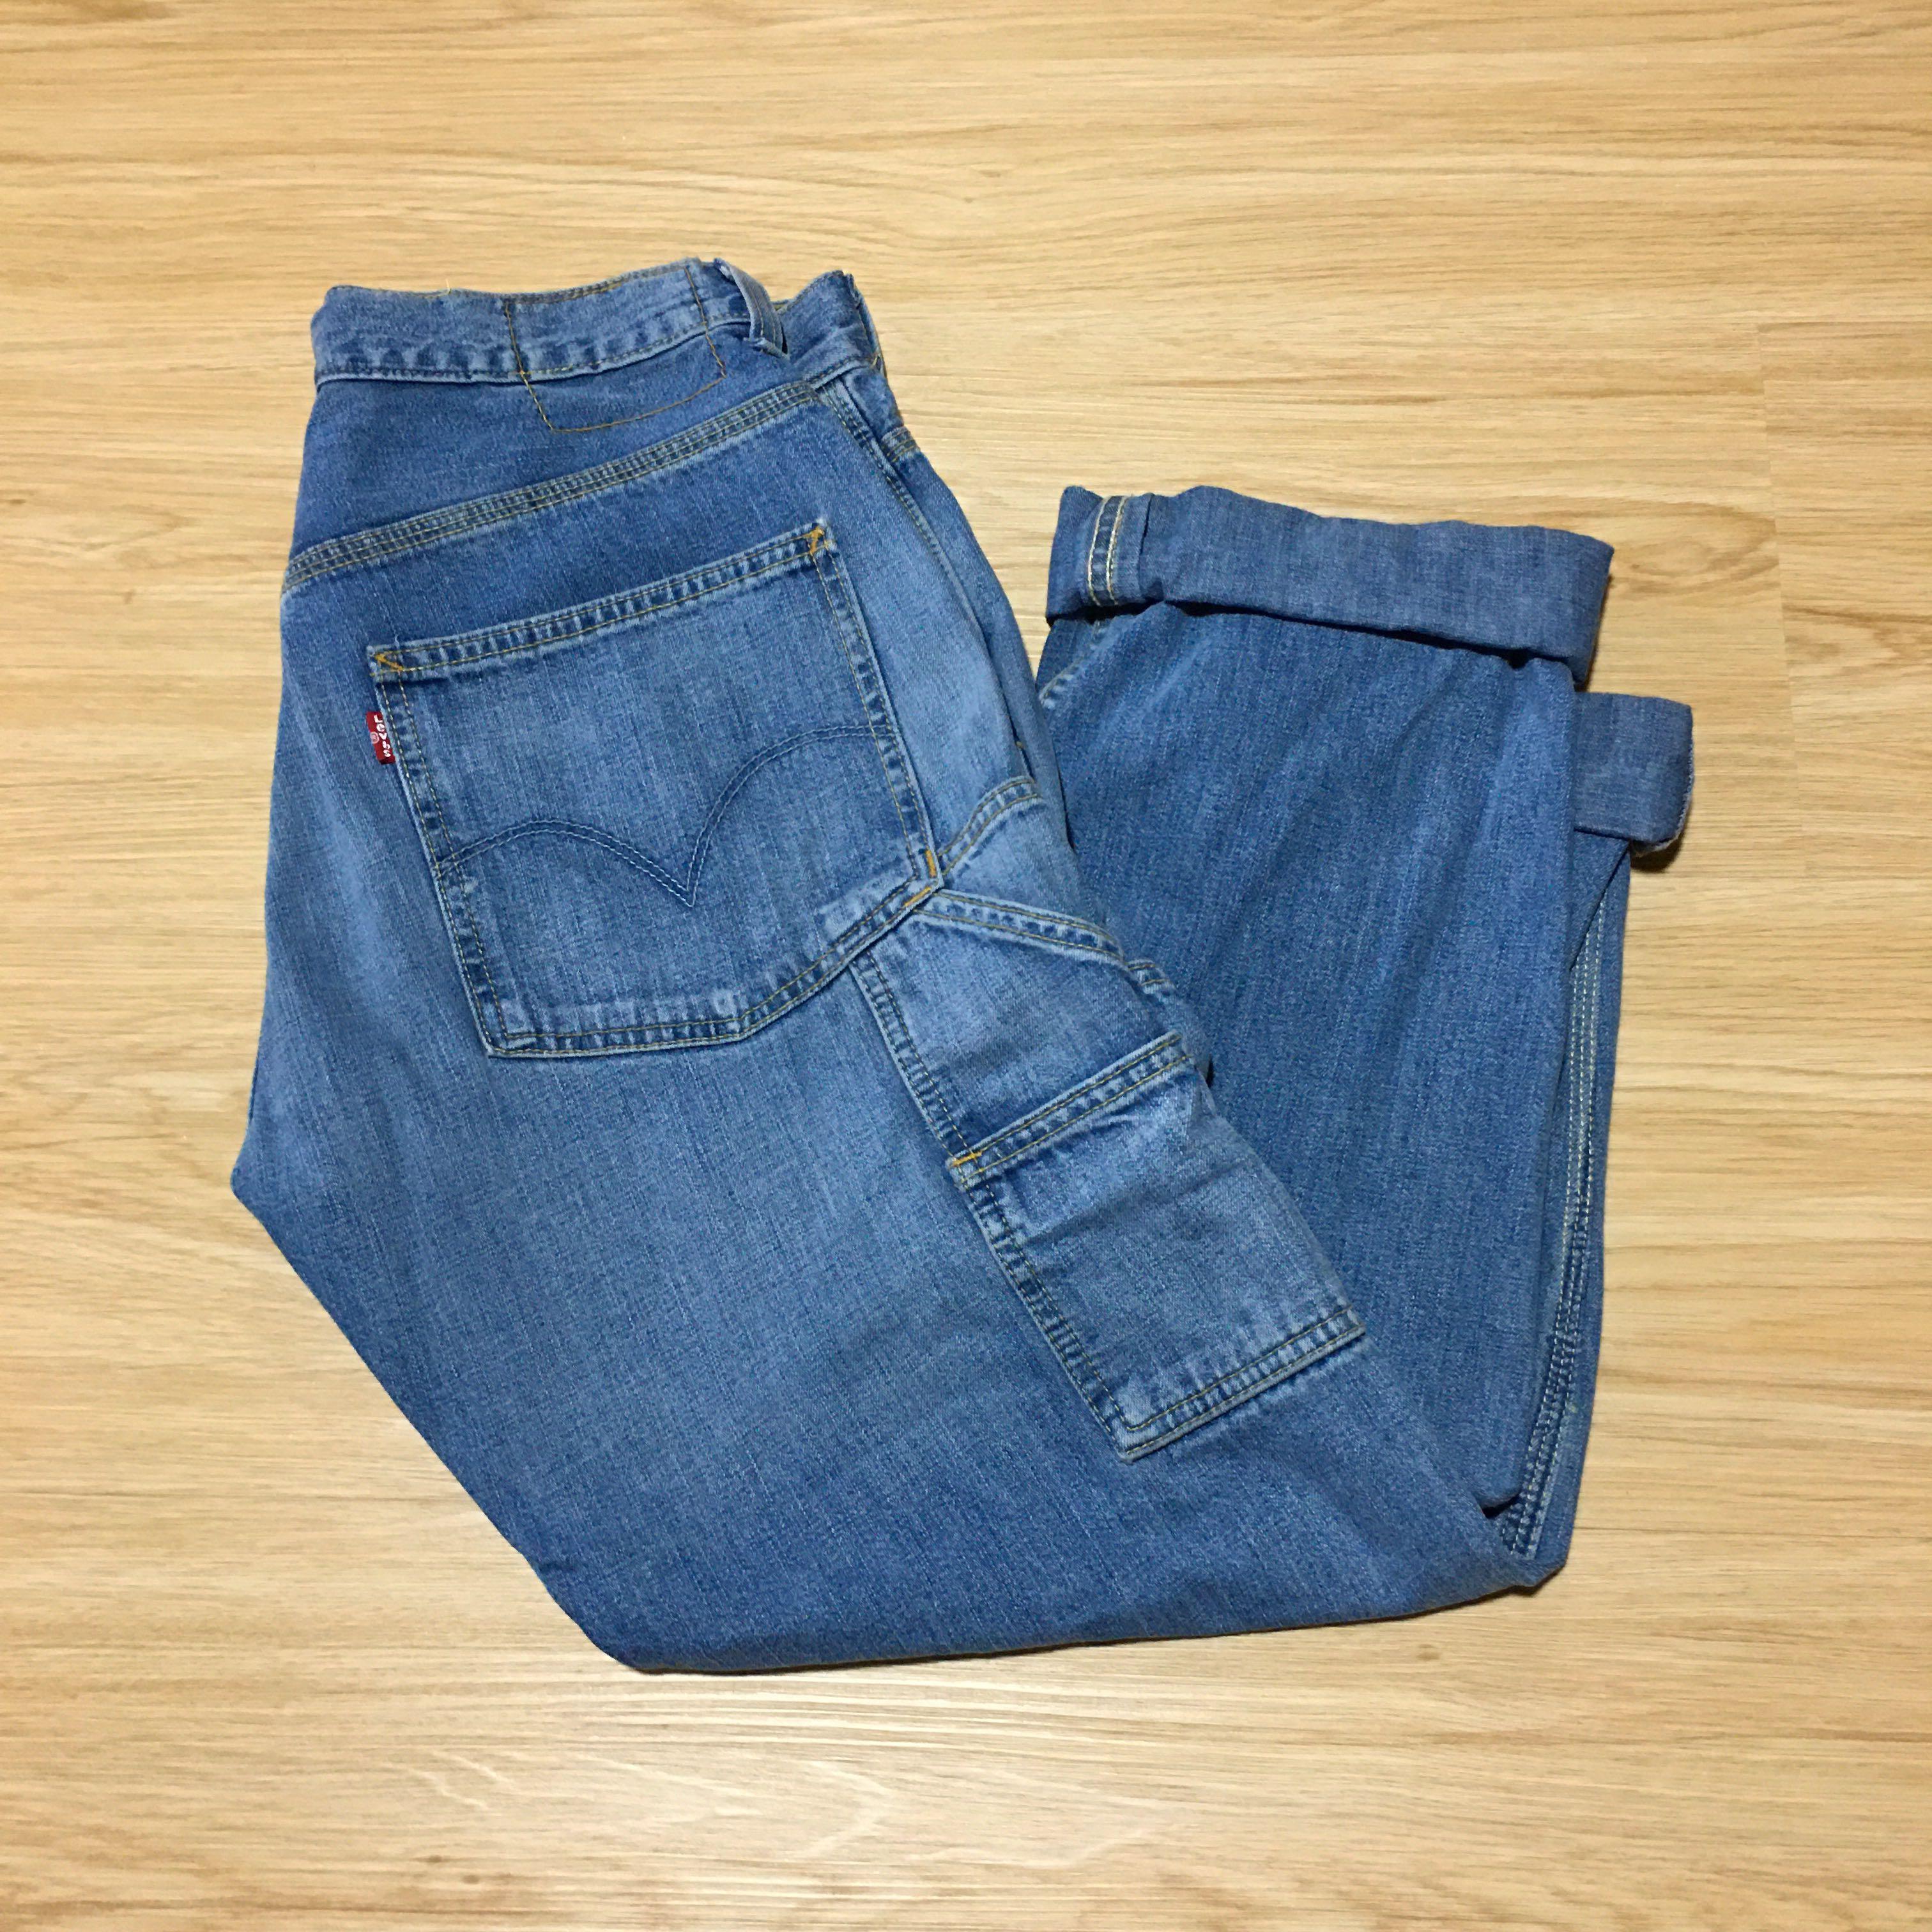 Descubrir 63+ imagen levi’s jeans with side pockets